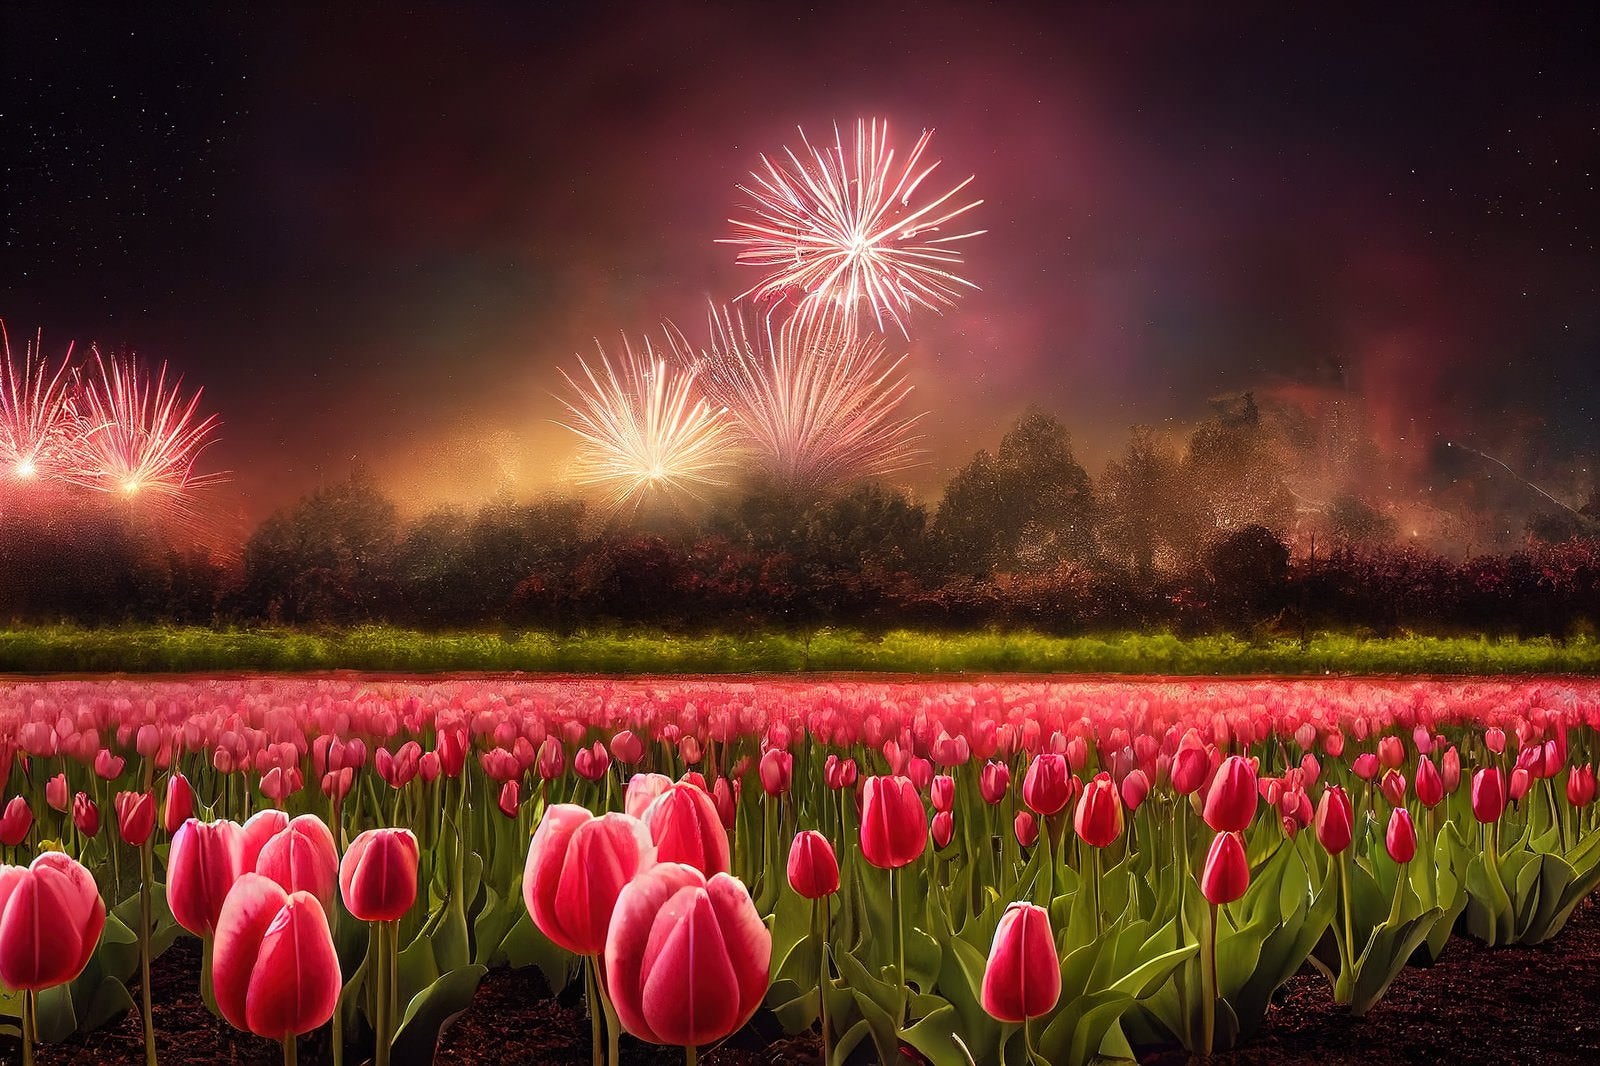 「チューリップ畑と打上花火」の写真